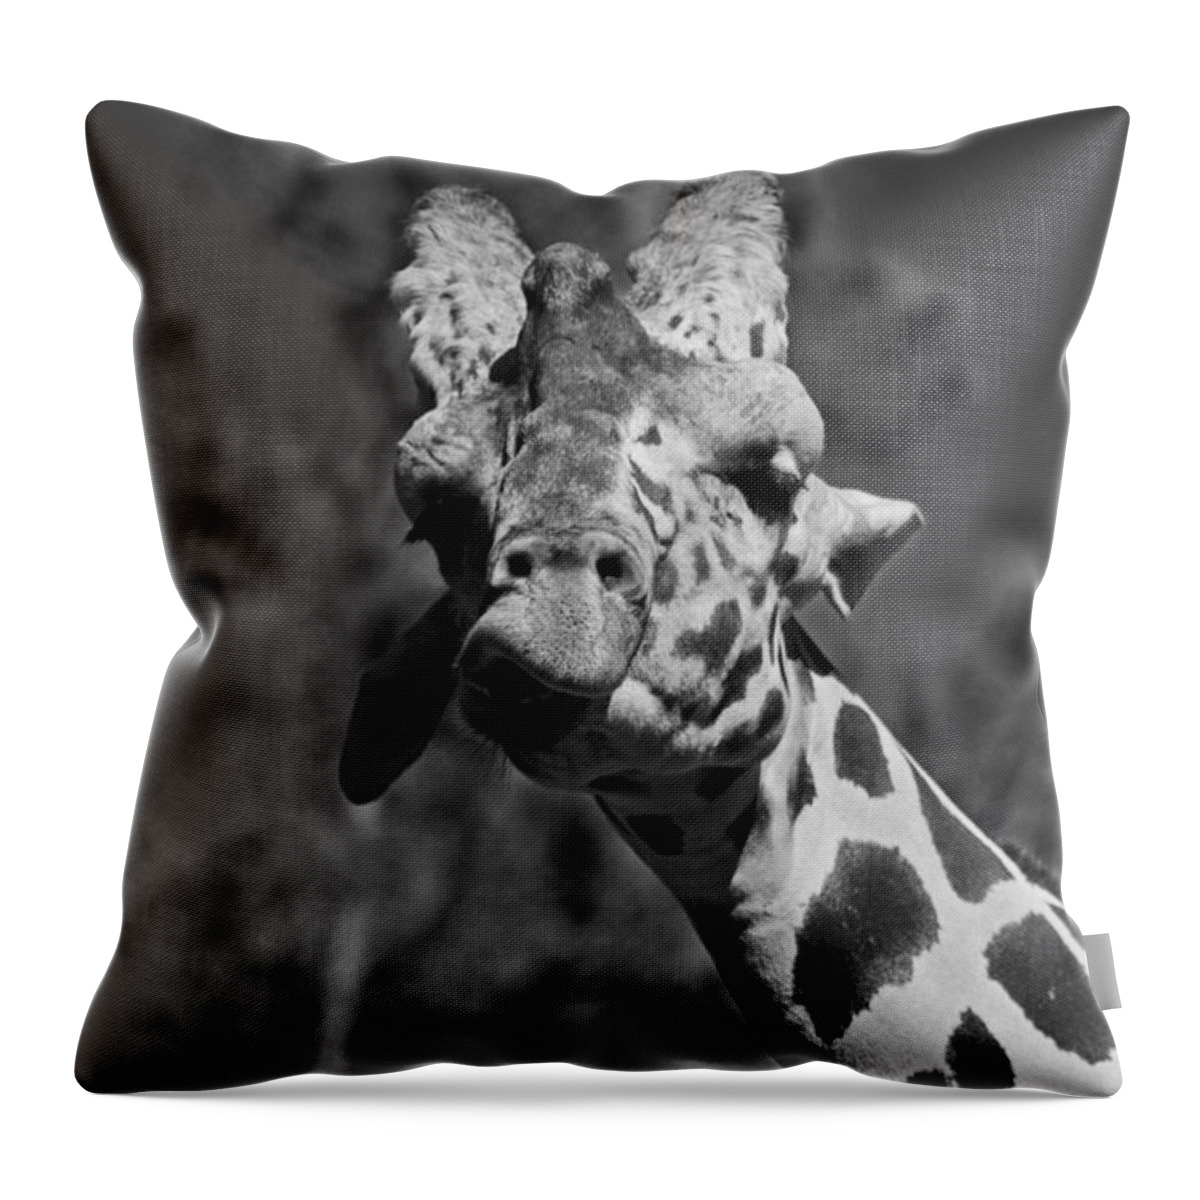 Giraffe Throw Pillow featuring the photograph Gimme a Kiss #1 by Michiale Schneider